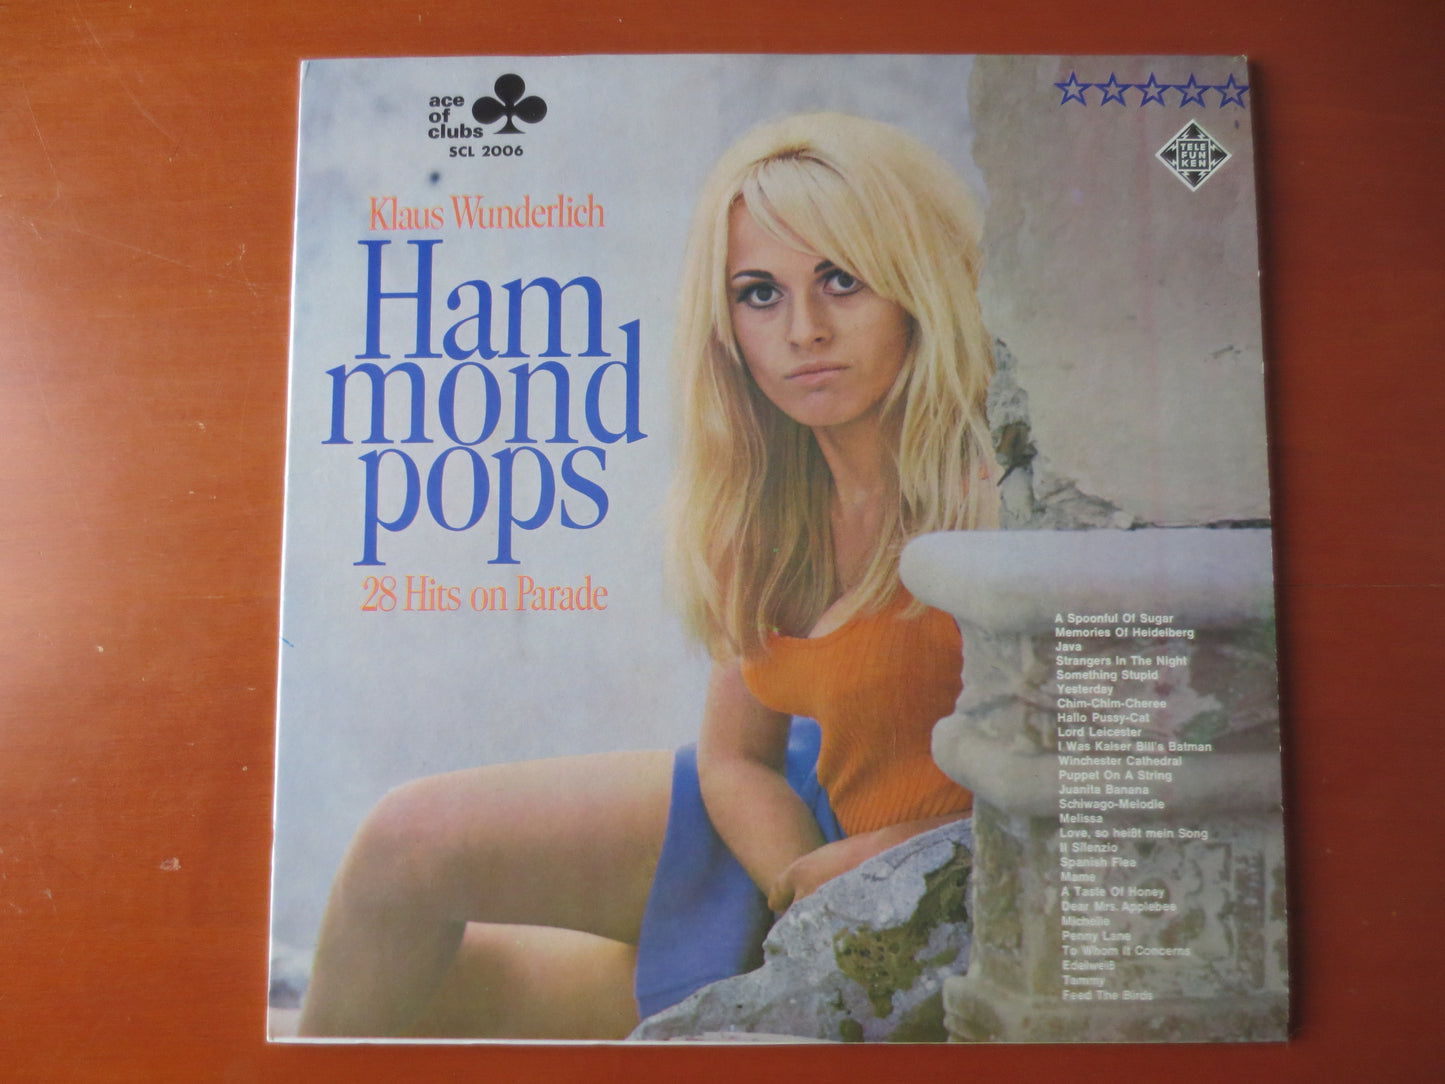 HAMMOND POPS, HAMMOND Pops Records, Hammond Organ, Vintage Vinyl, Record Vinyl, Records, Vinyl Albums, Organs, 1967 Records